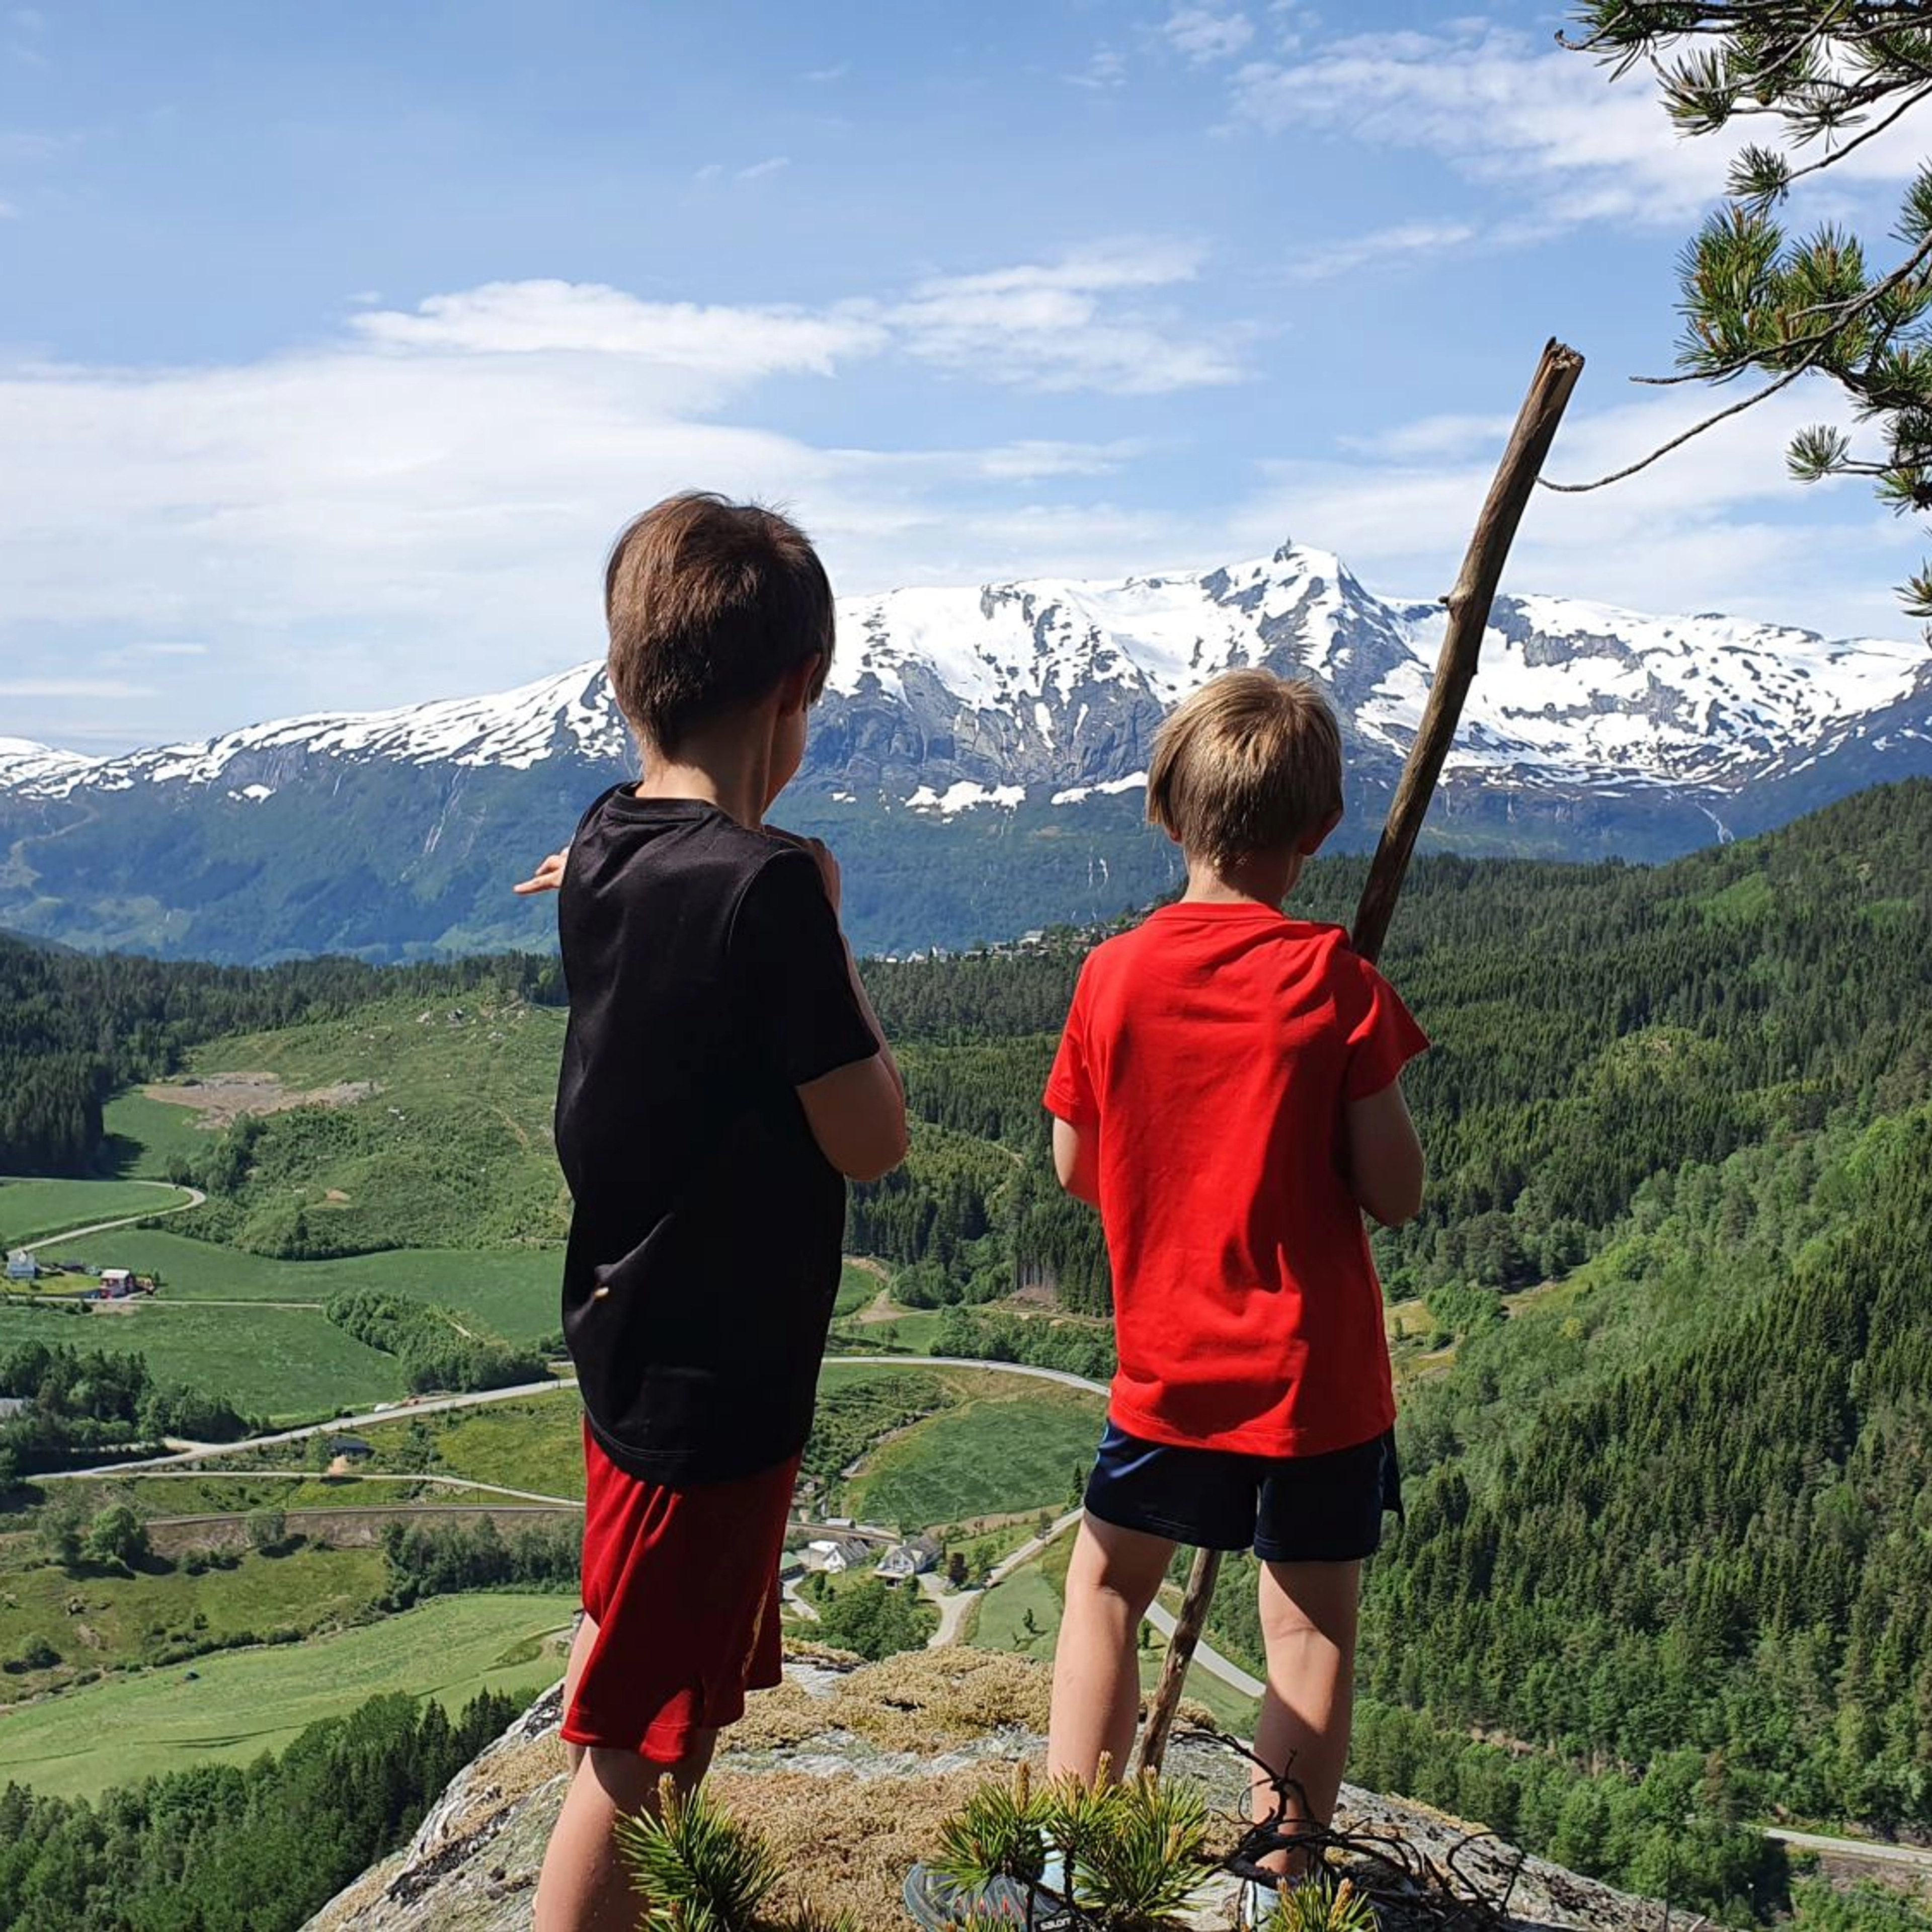 Familienfreundliche Wanderung nach Sverrestigen - Voss, Norwegen